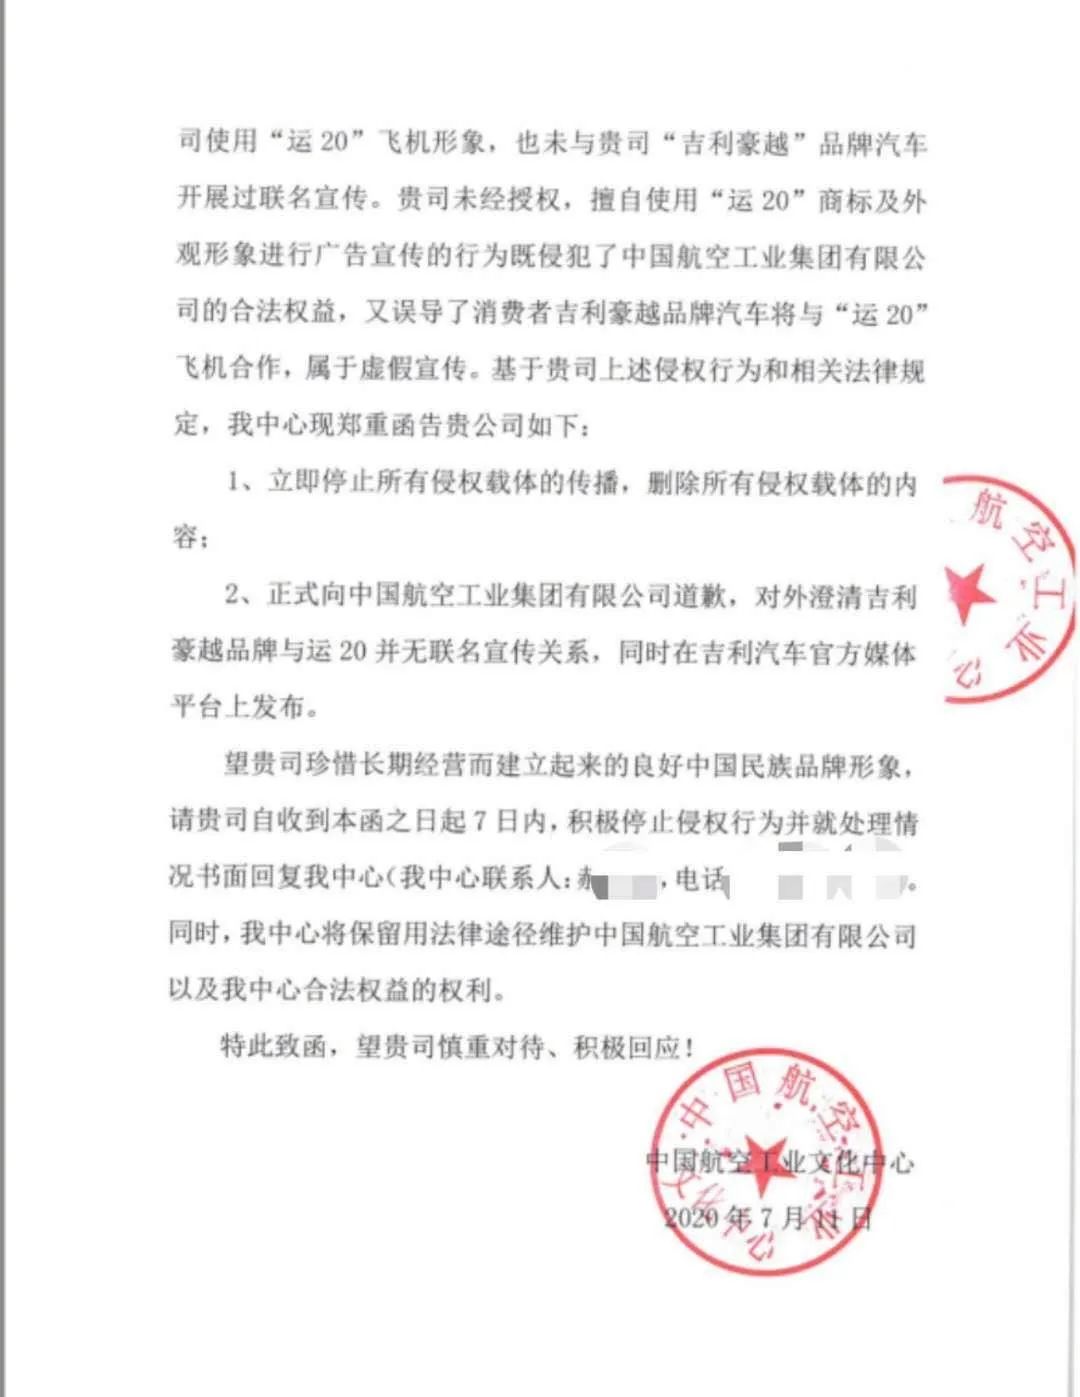 中国航空工业要求吉利汽车立即停止侵权行为